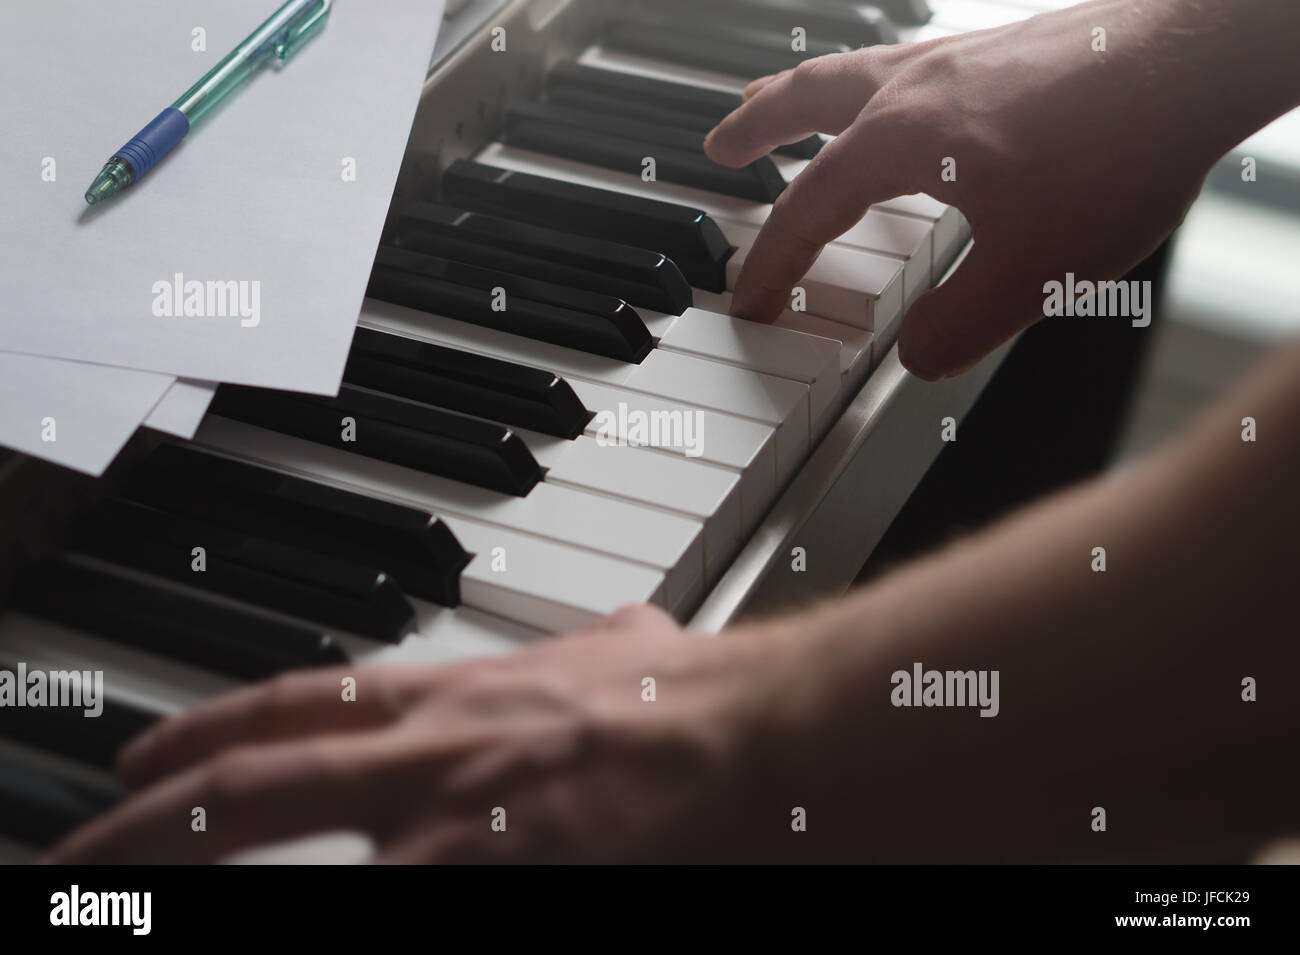 Klavierunterricht, coaching, Lehre oder Ausbildung Konzept. Talentierter Pianist zeigt Beispiel mit digitaler Musikinstrument. Intime und filmischen Blick. Stockfoto